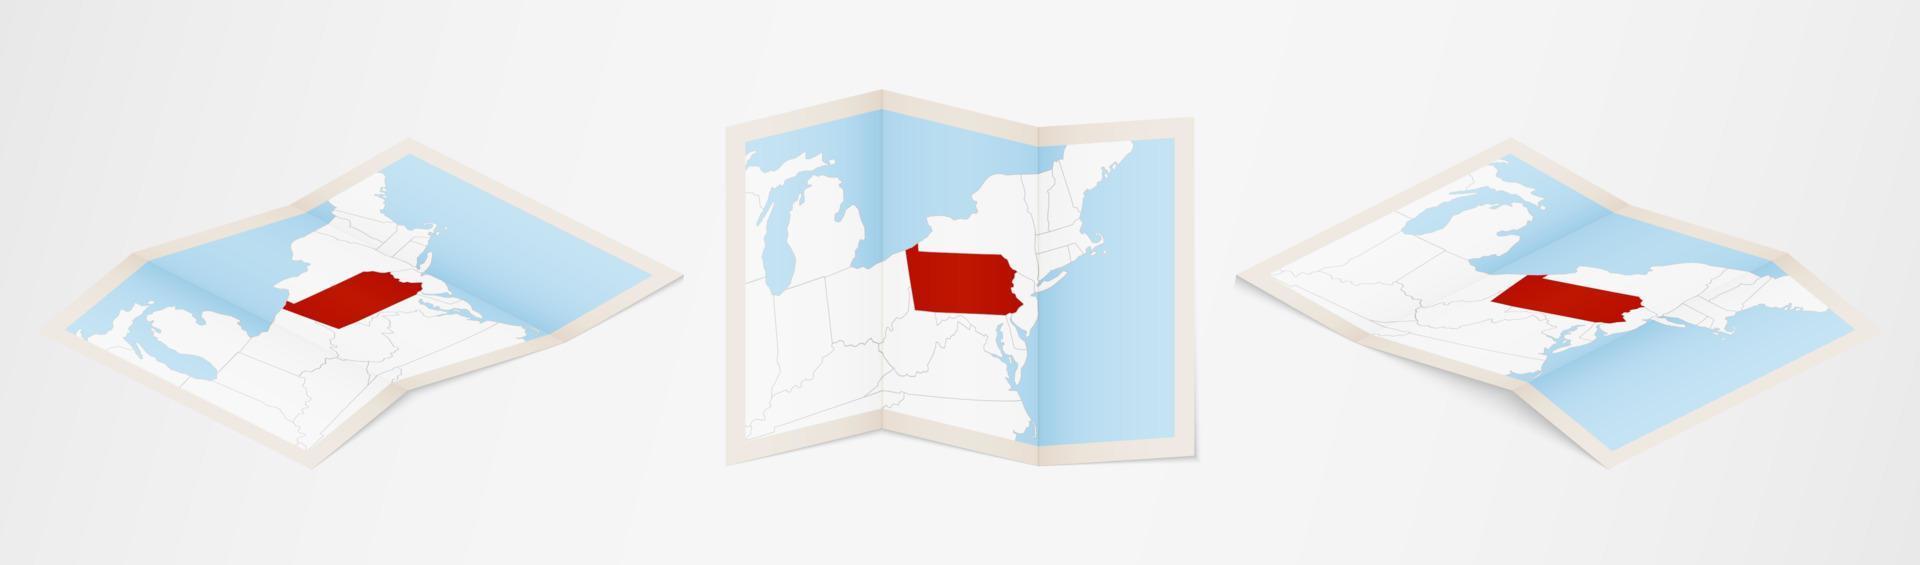 mapa plegado de pennsylvania en tres versiones diferentes. vector